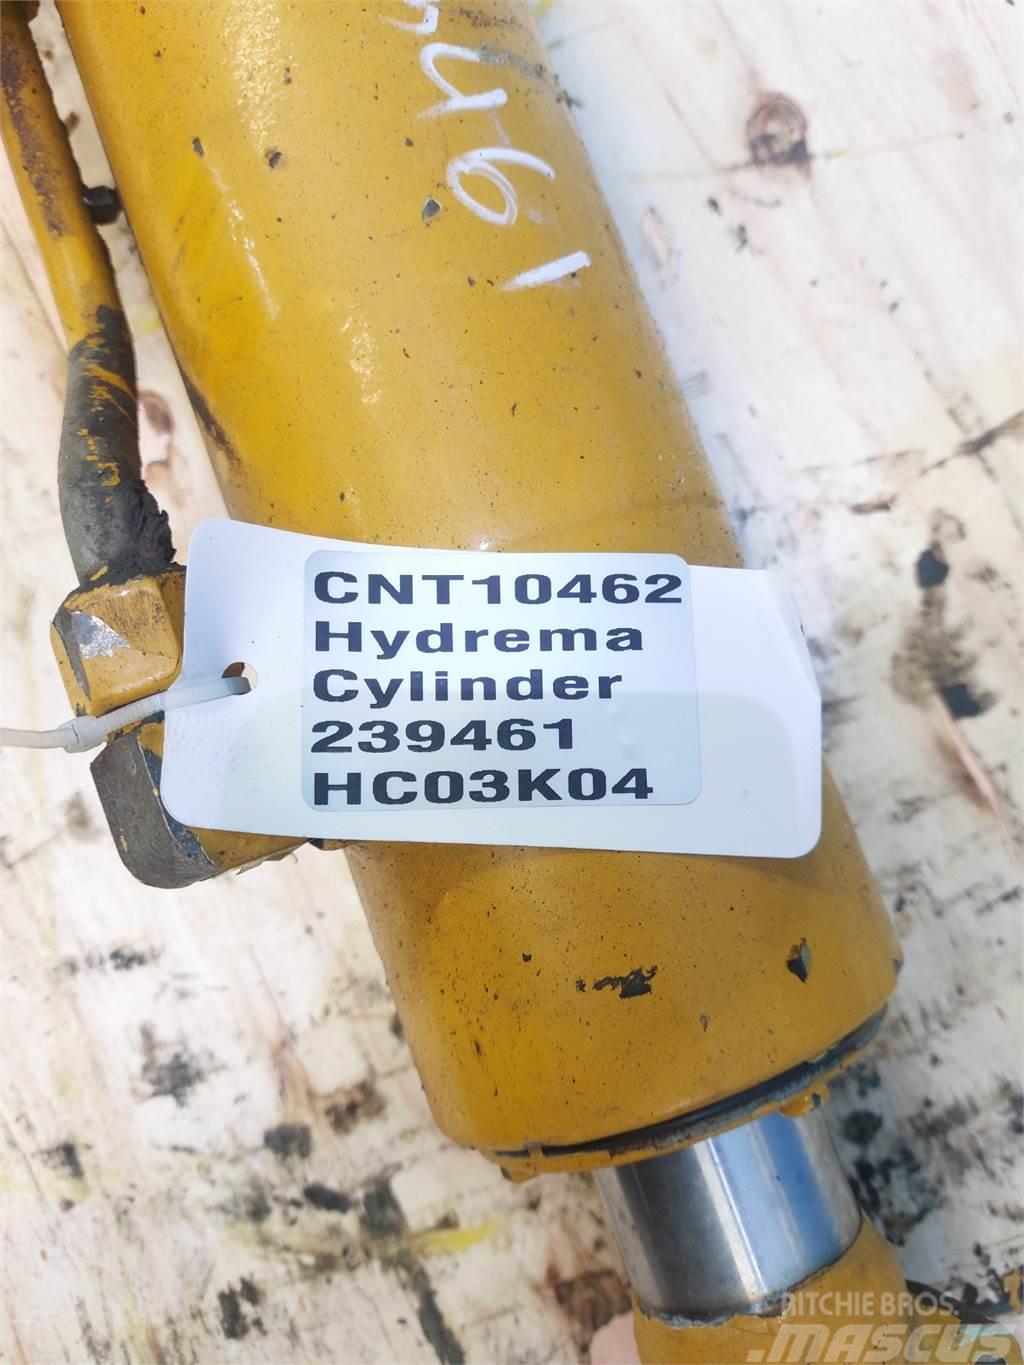 Hydrema 906C Hloubkové lopaty